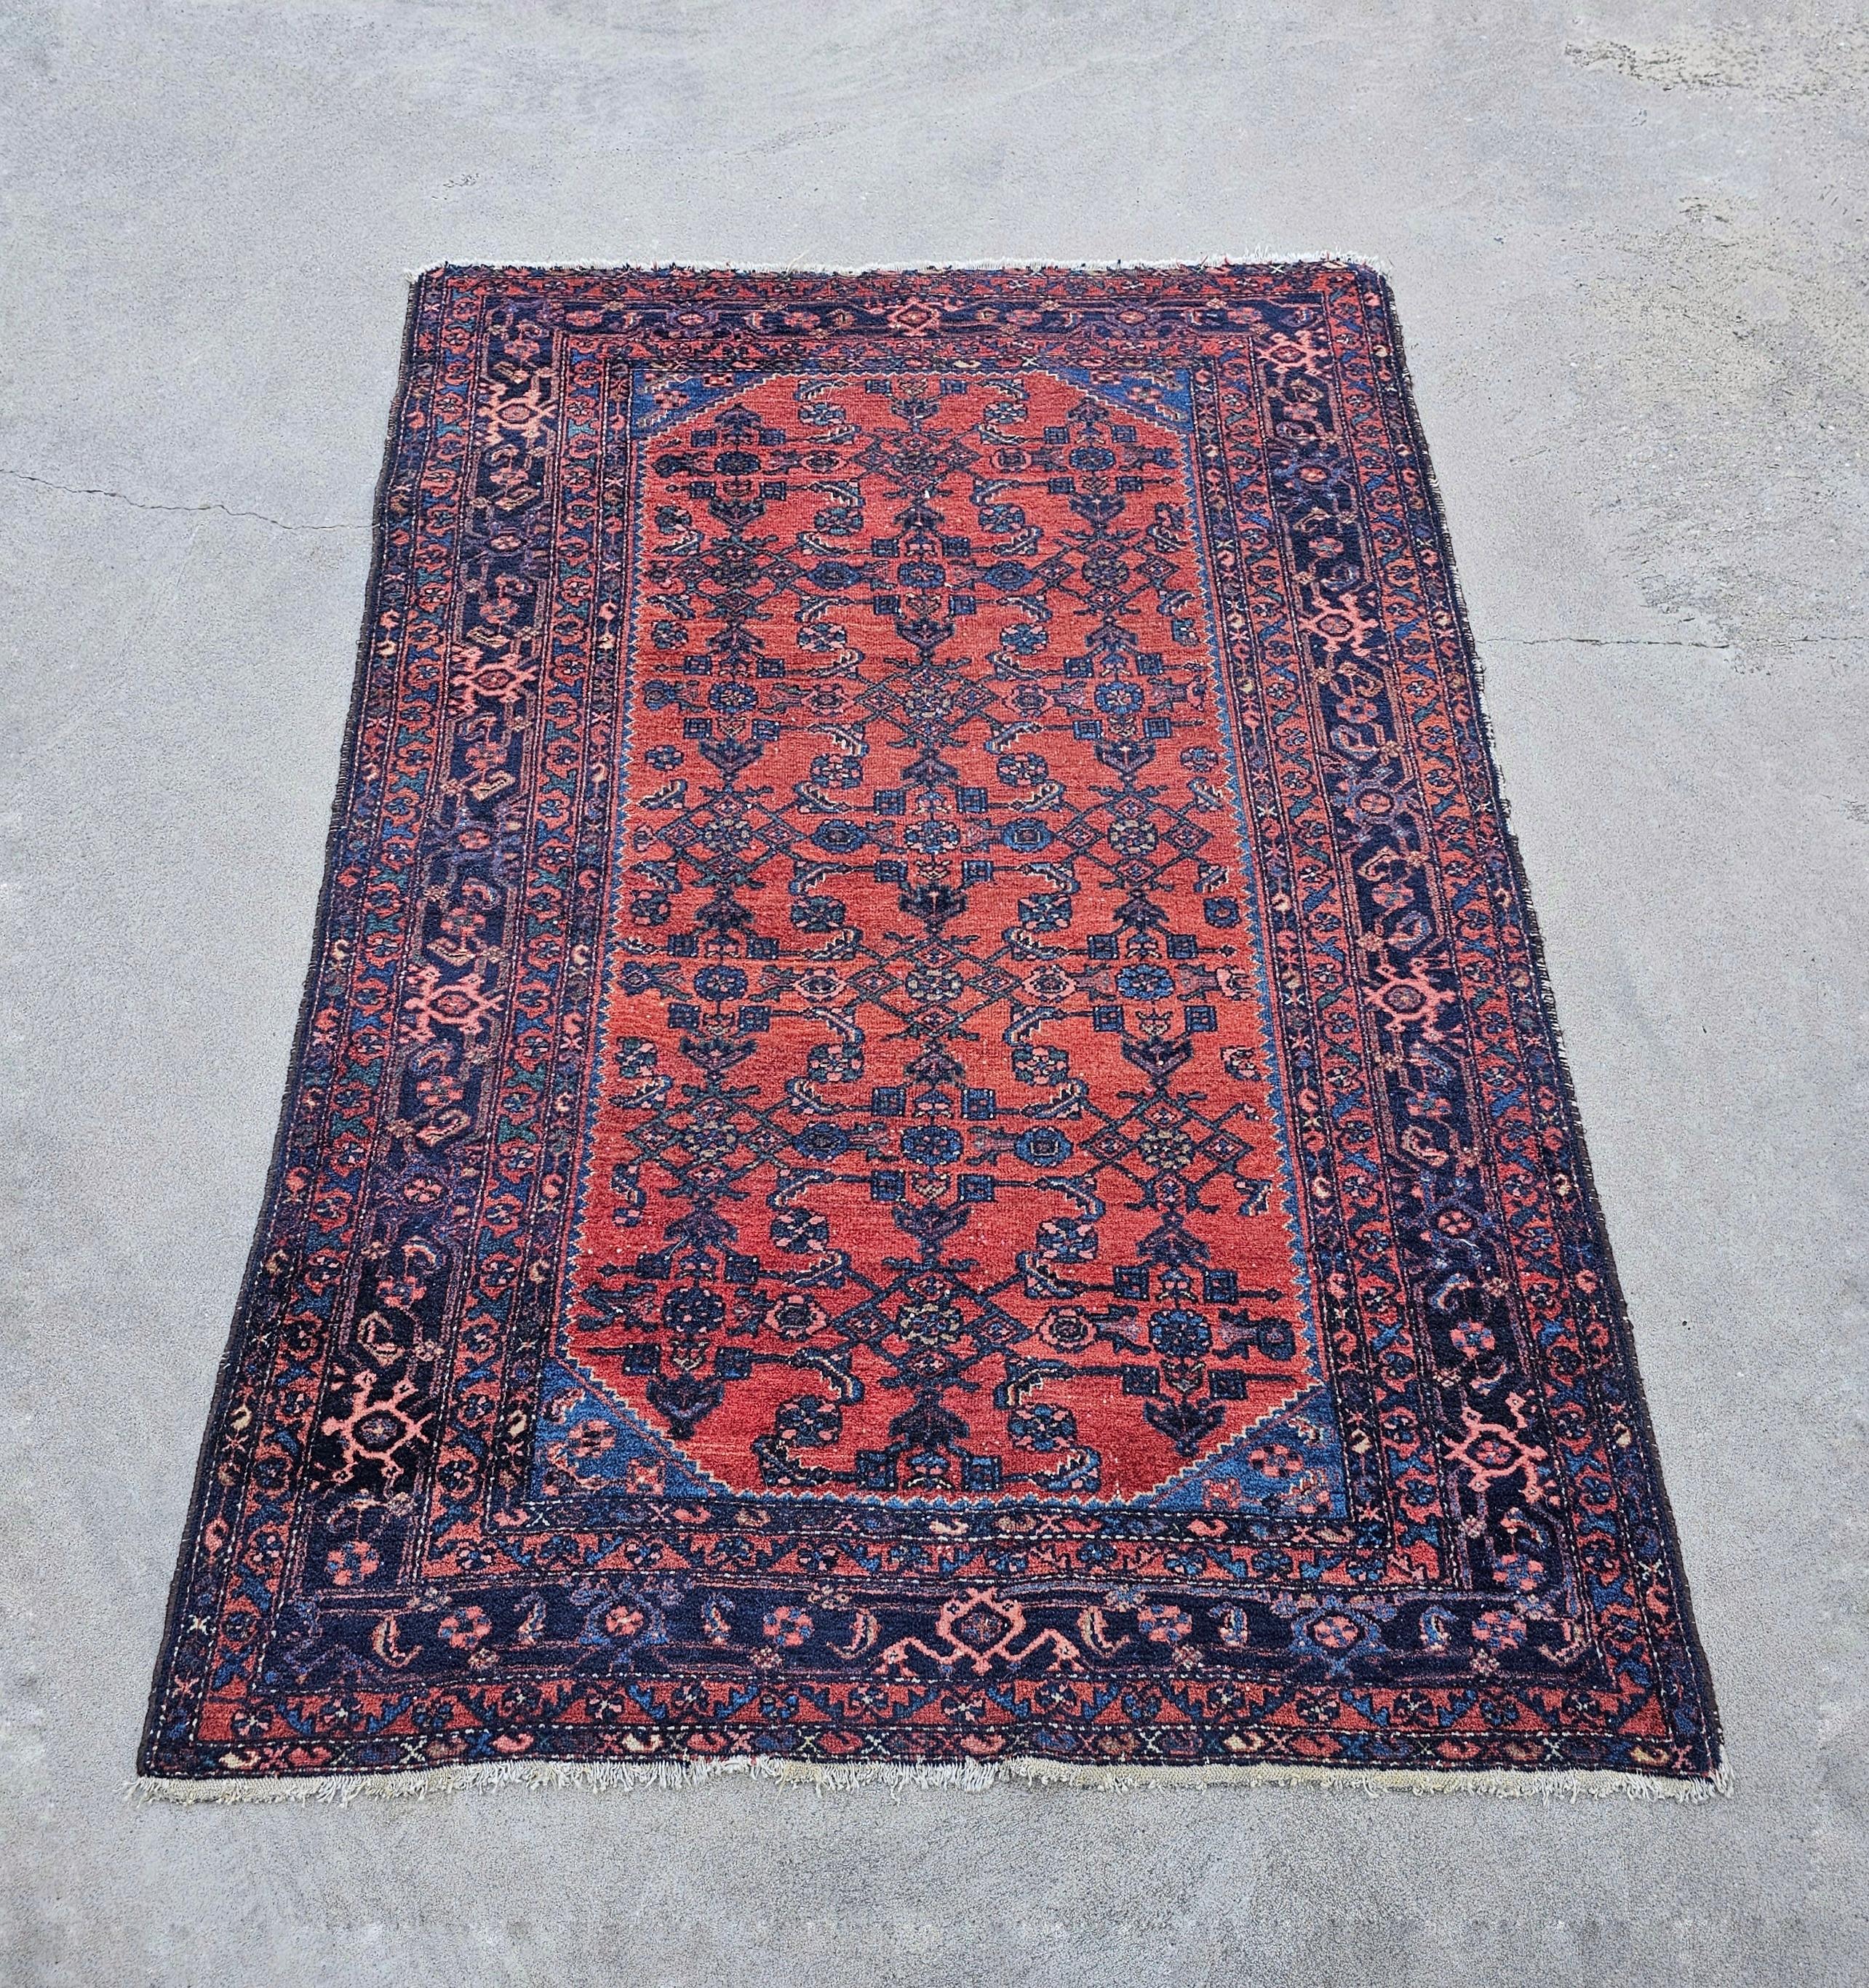 In diesem Angebot finden Sie einen antiken Belutsch-Teppich mit schönen floralen Mustern und leuchtenden Farben. Er wurde Ende des 19. Jahrhunderts handgeknüpft. Der Teppich ist aus 100 % Wolle gefertigt.

Der Teppich ist in einem guten antiken